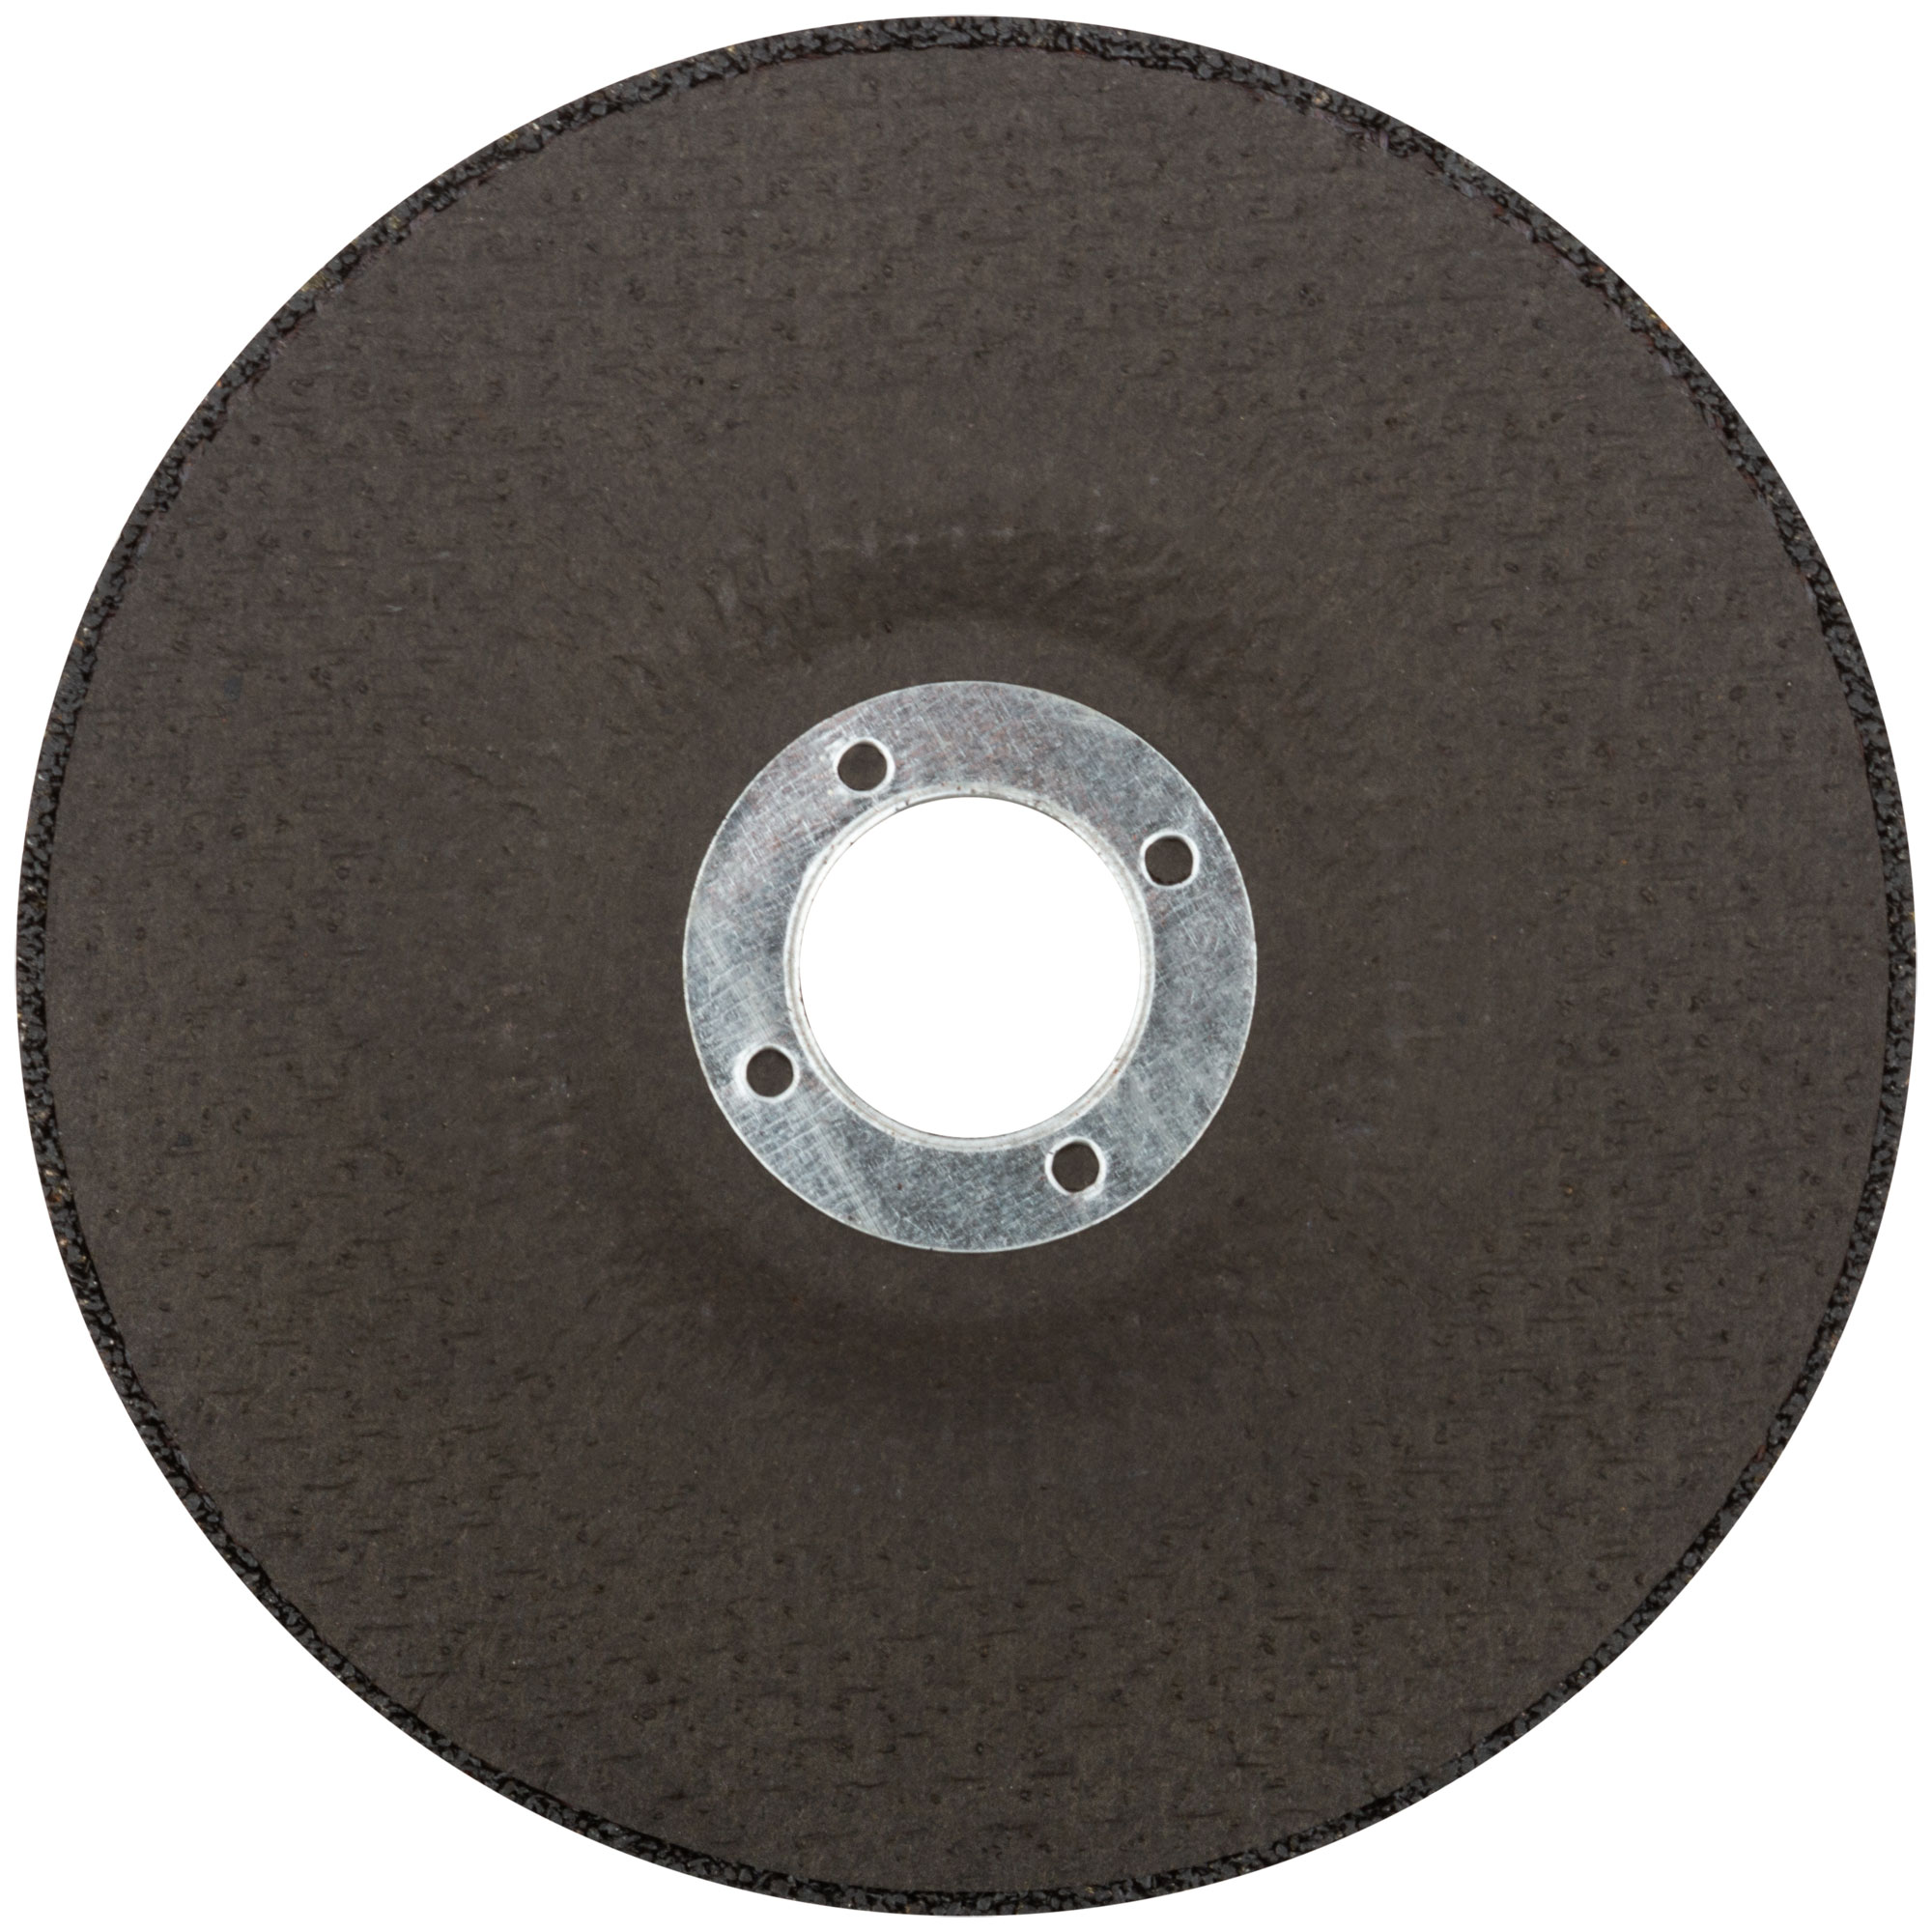 Профессиональный диск отрезной по металлу Т41-150 х 2,0 х 22,2 мм, Cutop Profi